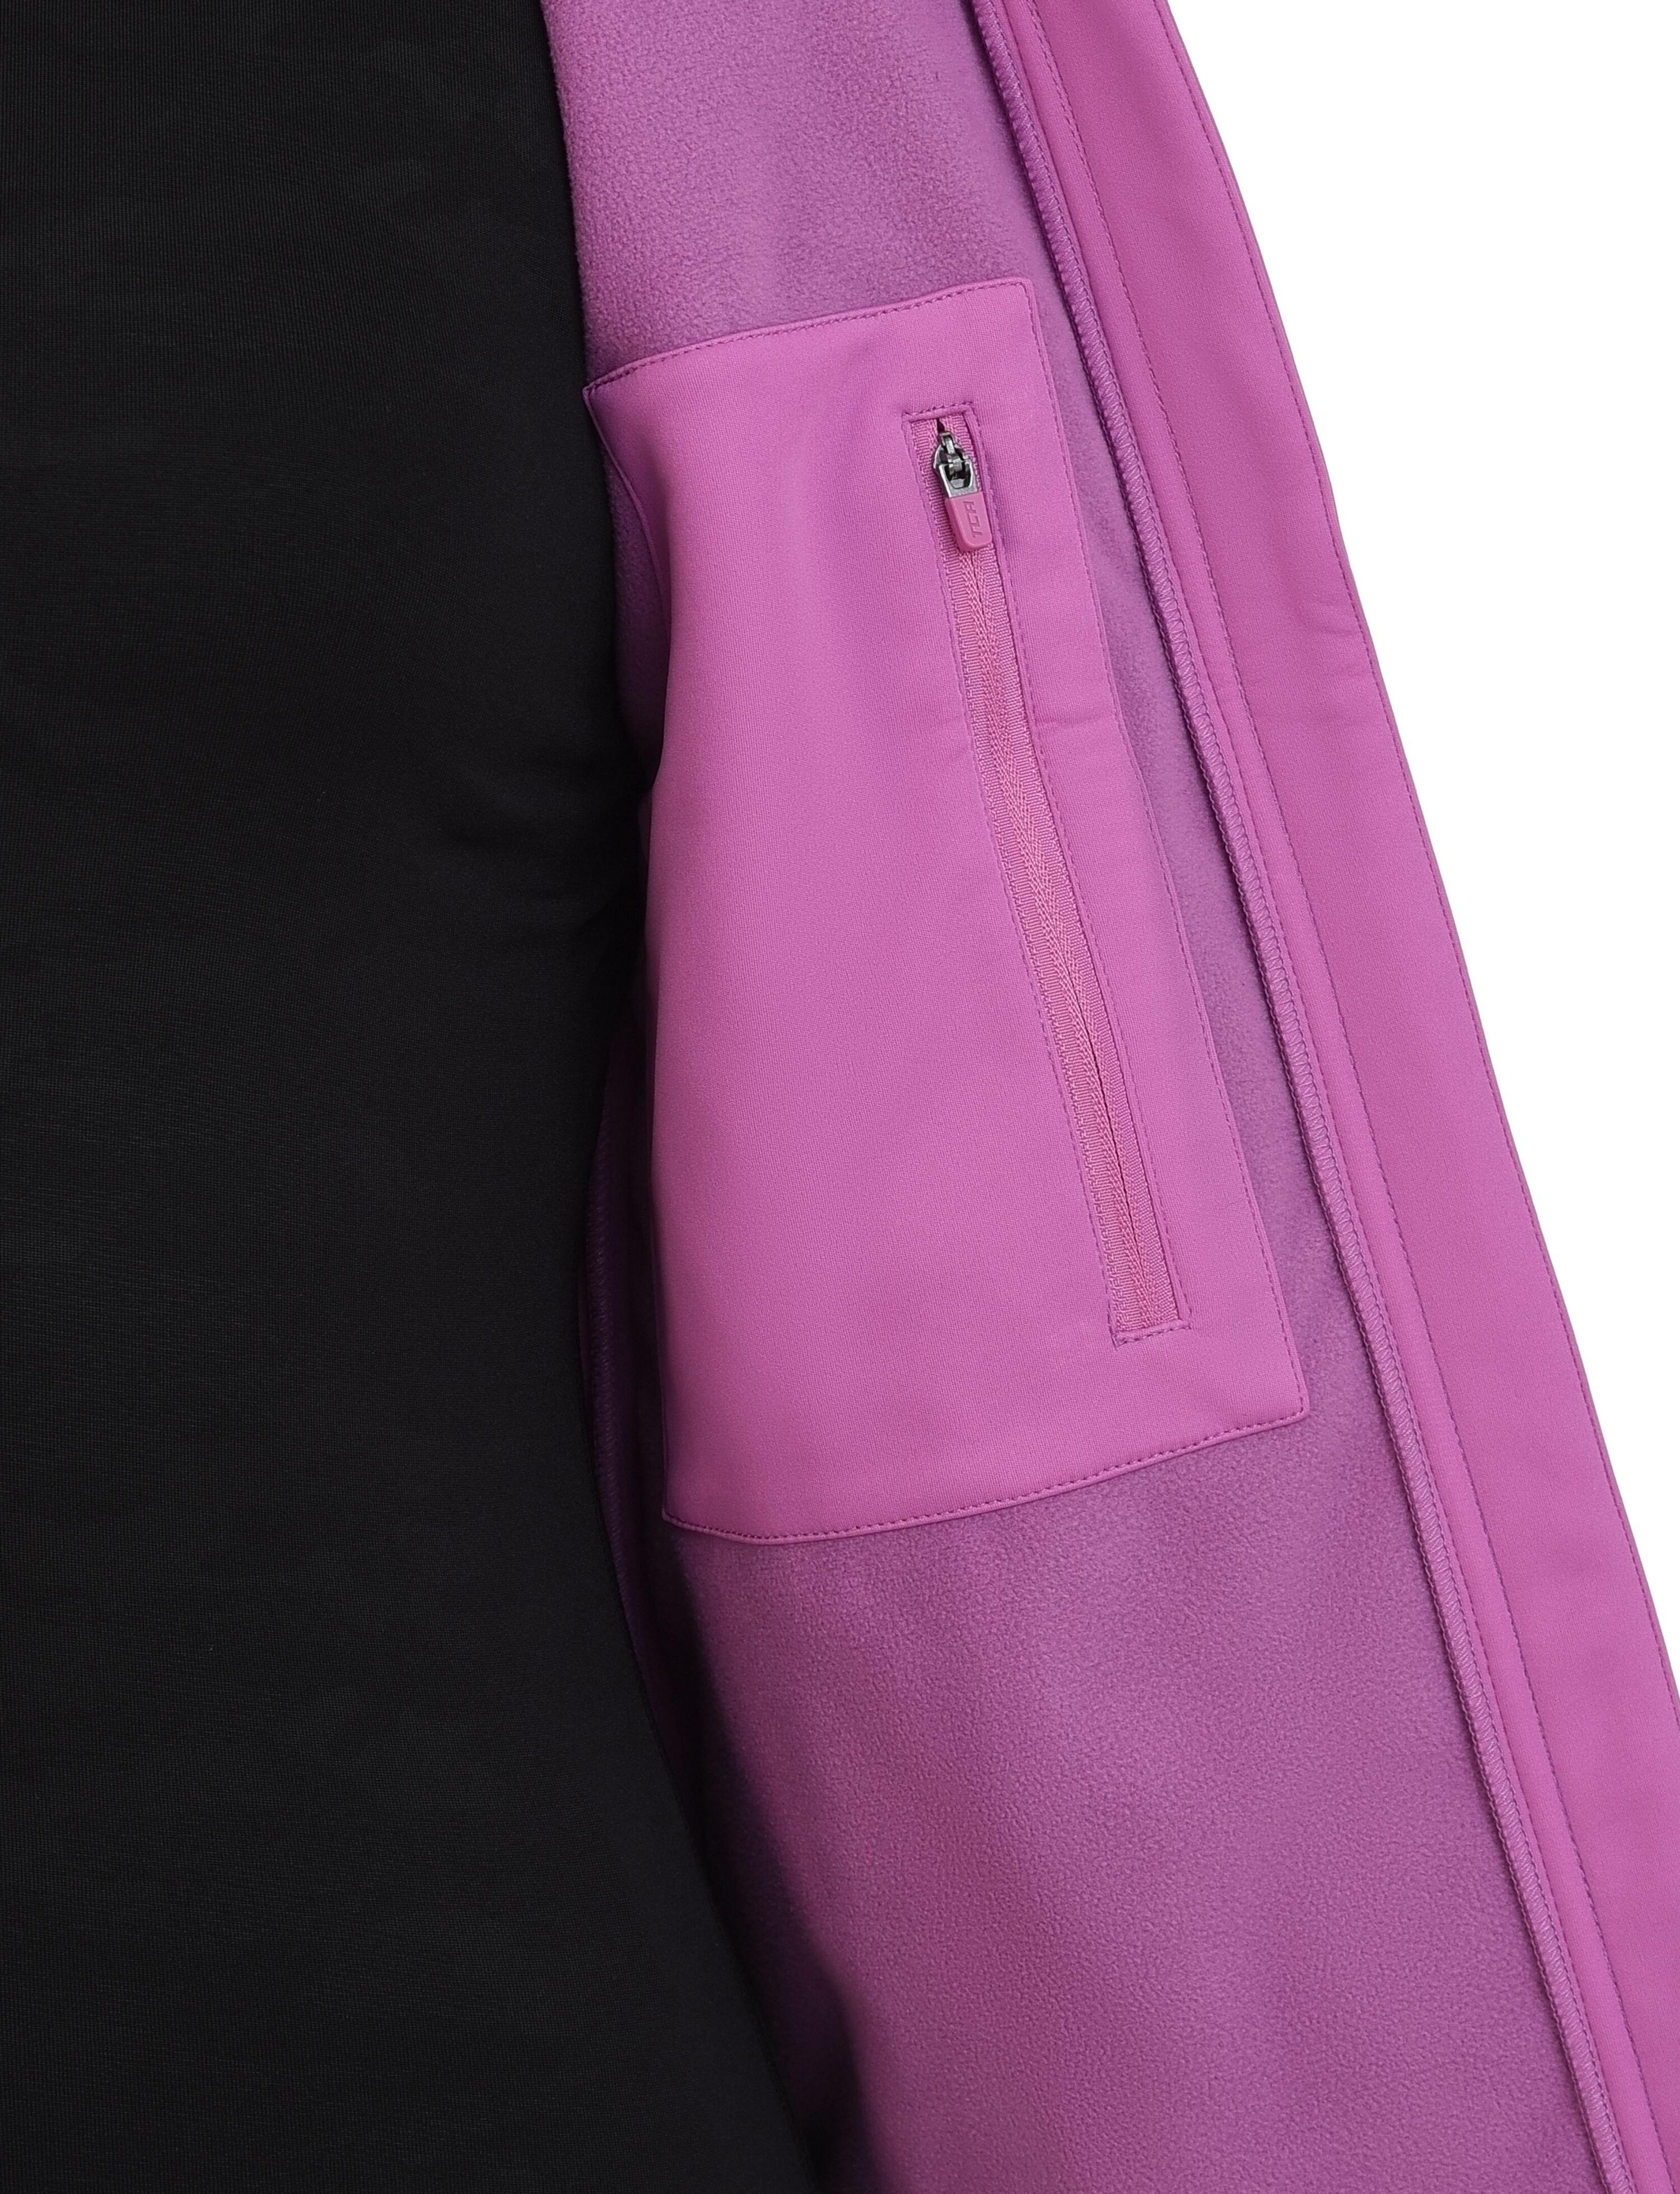 Women's Wind Proof Gilet with Zip Pockets - Spring Crocus (Pink) 5/5